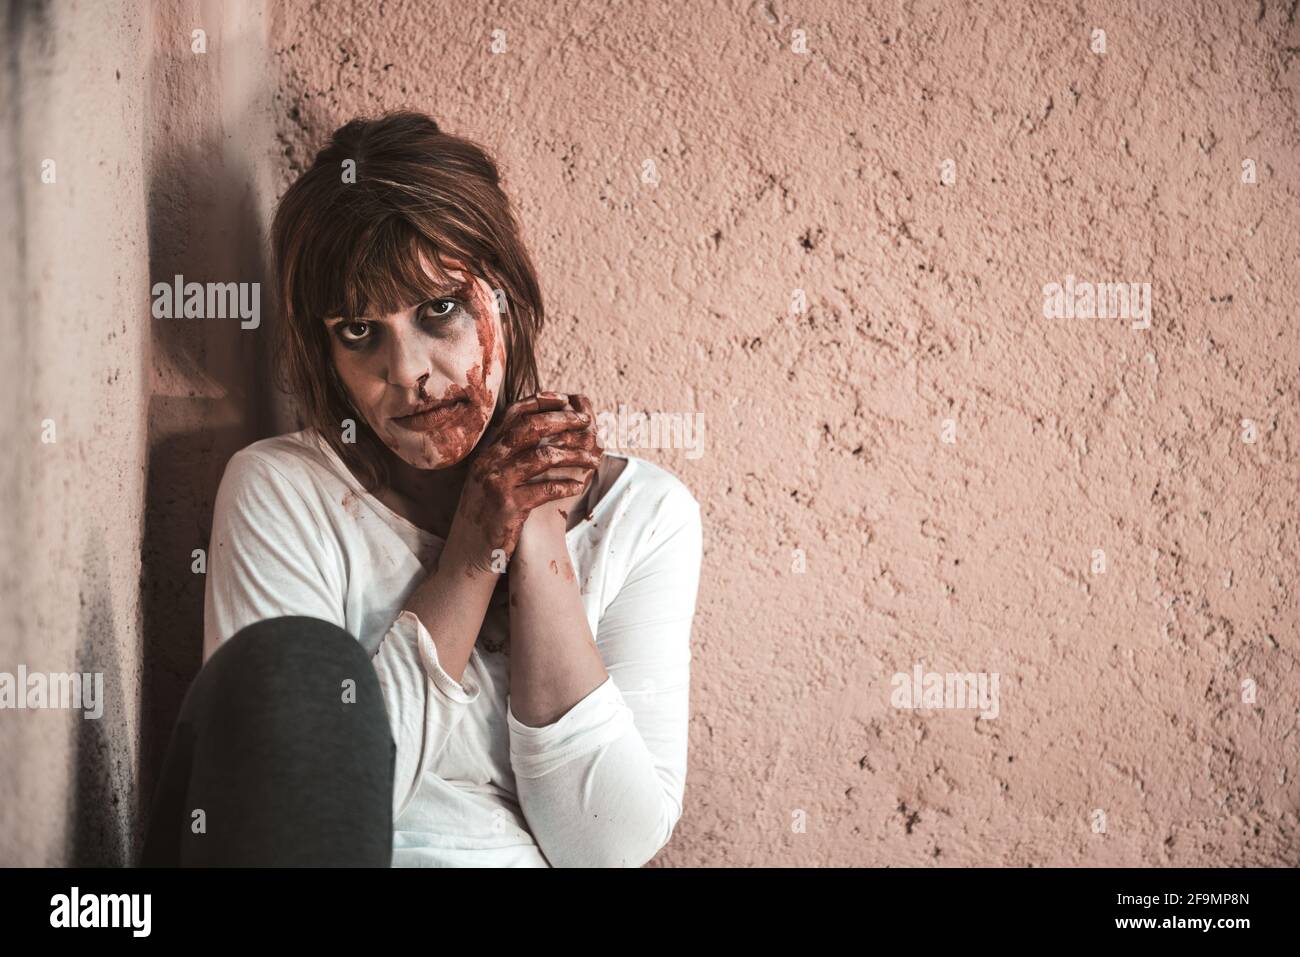 Ein hockendes Mädchen vor einer schmutzigen Wand, verzweifelt, weinend und verwundet Mädchen, das sie mit einem traurigen Blick sieht, sie ist auf dem Boden auf einem Bürgersteig. Stockfoto